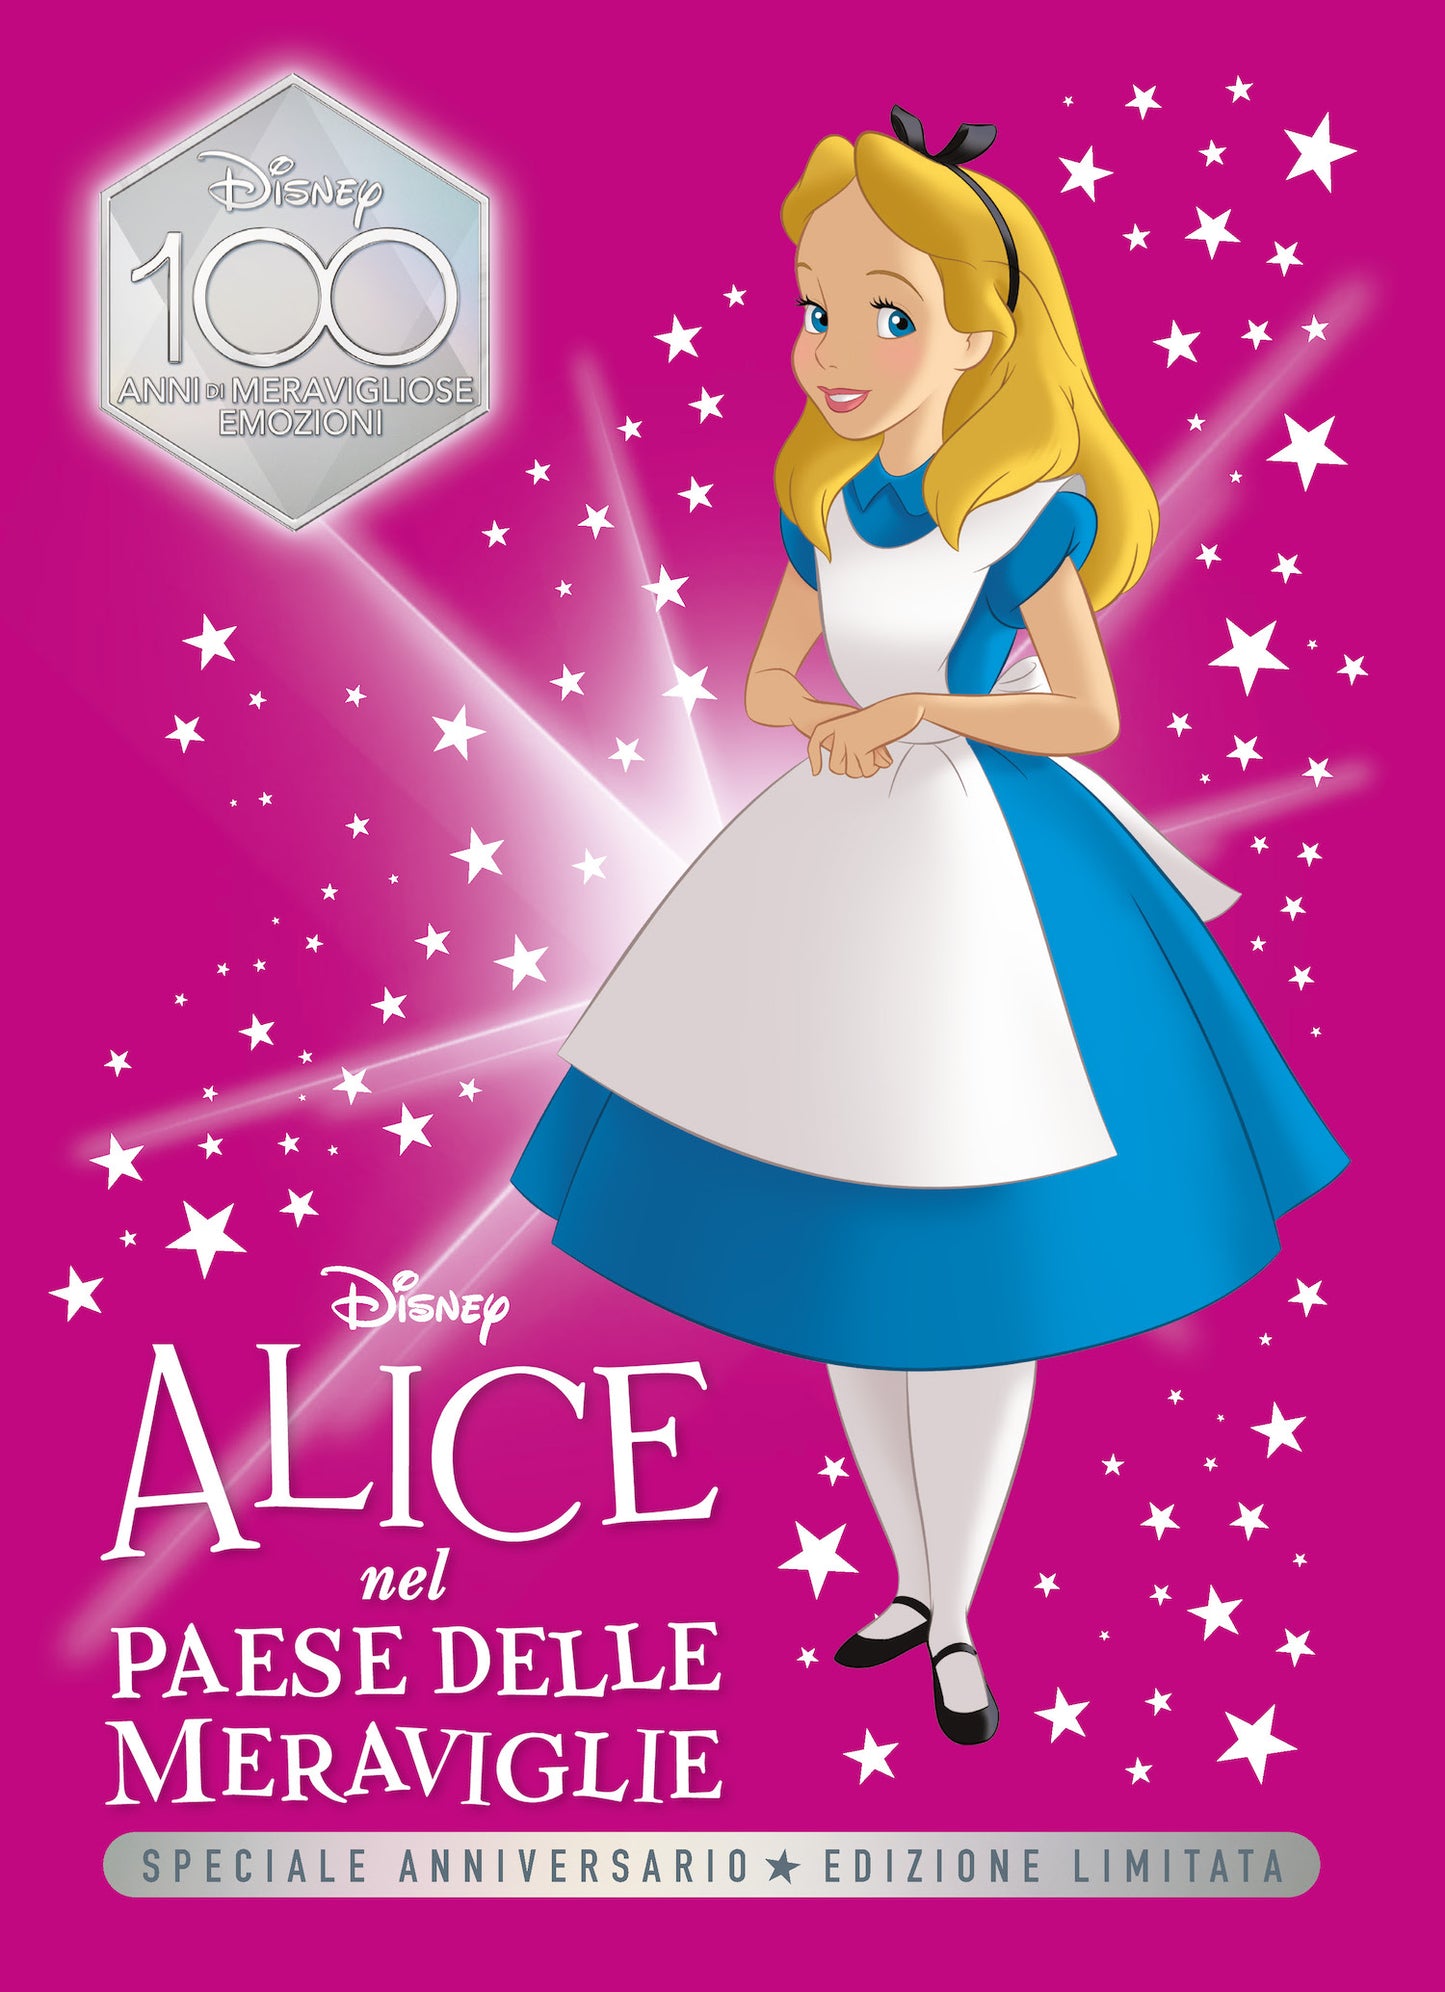 Alice nel Paese delle meraviglie Speciale Anniversario Edizione limitata::Disney 100 Anni di meravigliose emozioni